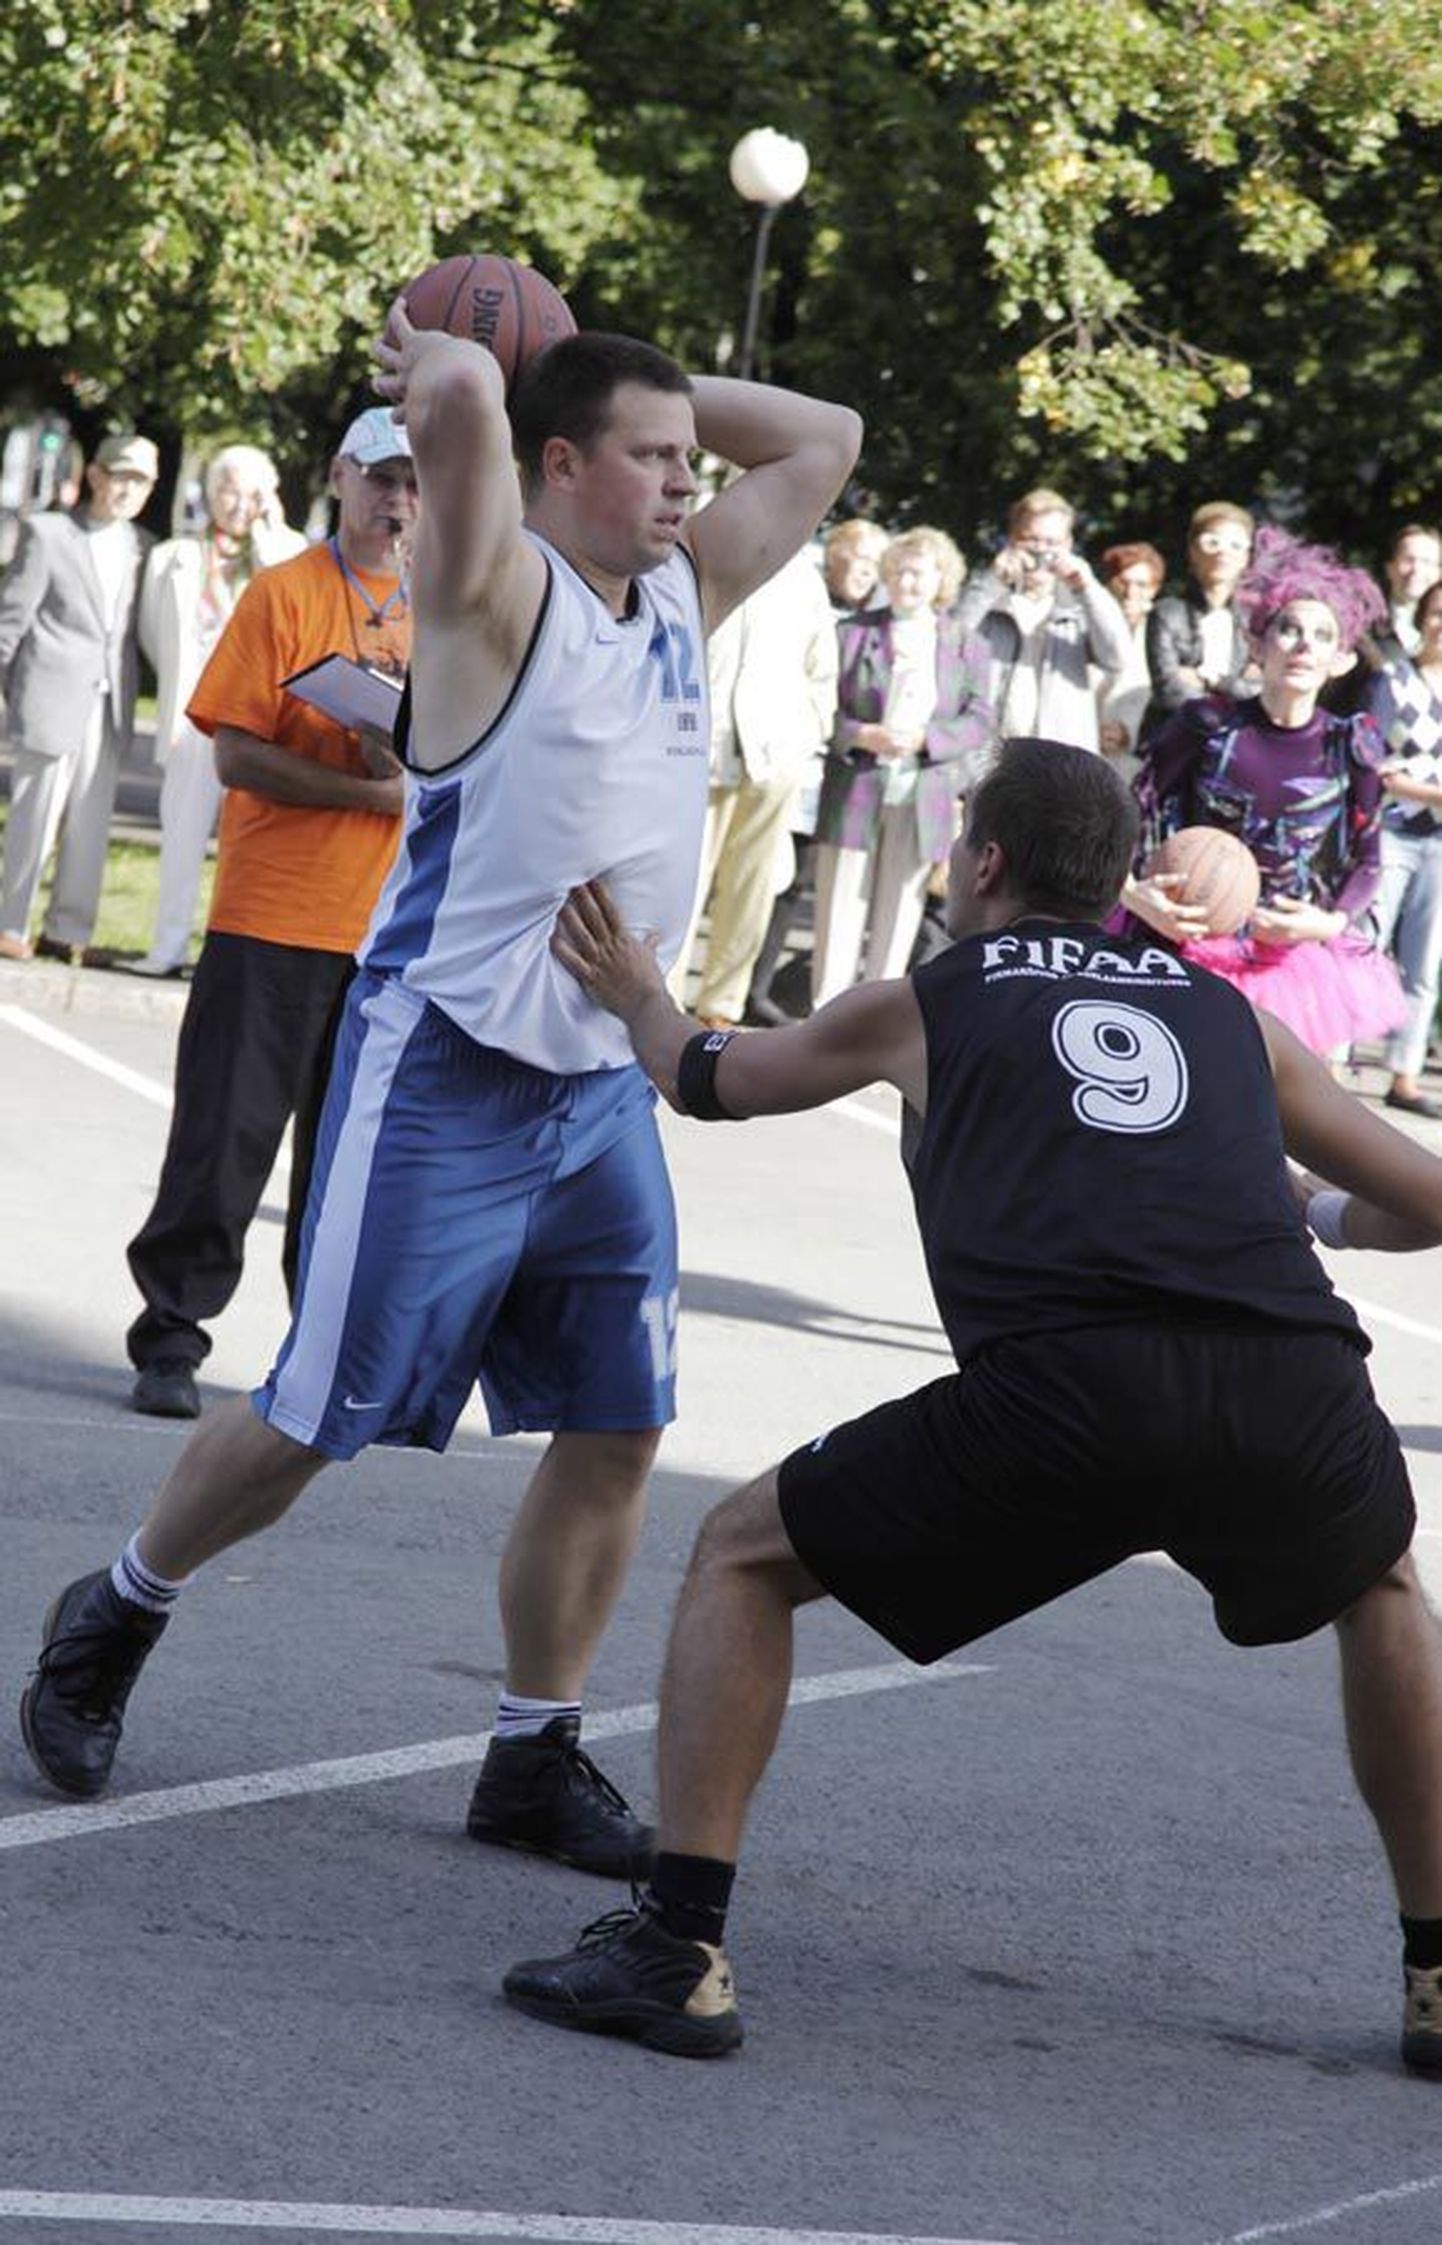 Riigikogulased mängisid viimati avalikkuse ees korvpalli kümme päeva tagasi, kui Tallinna kesklinnas kohtuti tänavakorvpallis Estonia teatri esindusega.